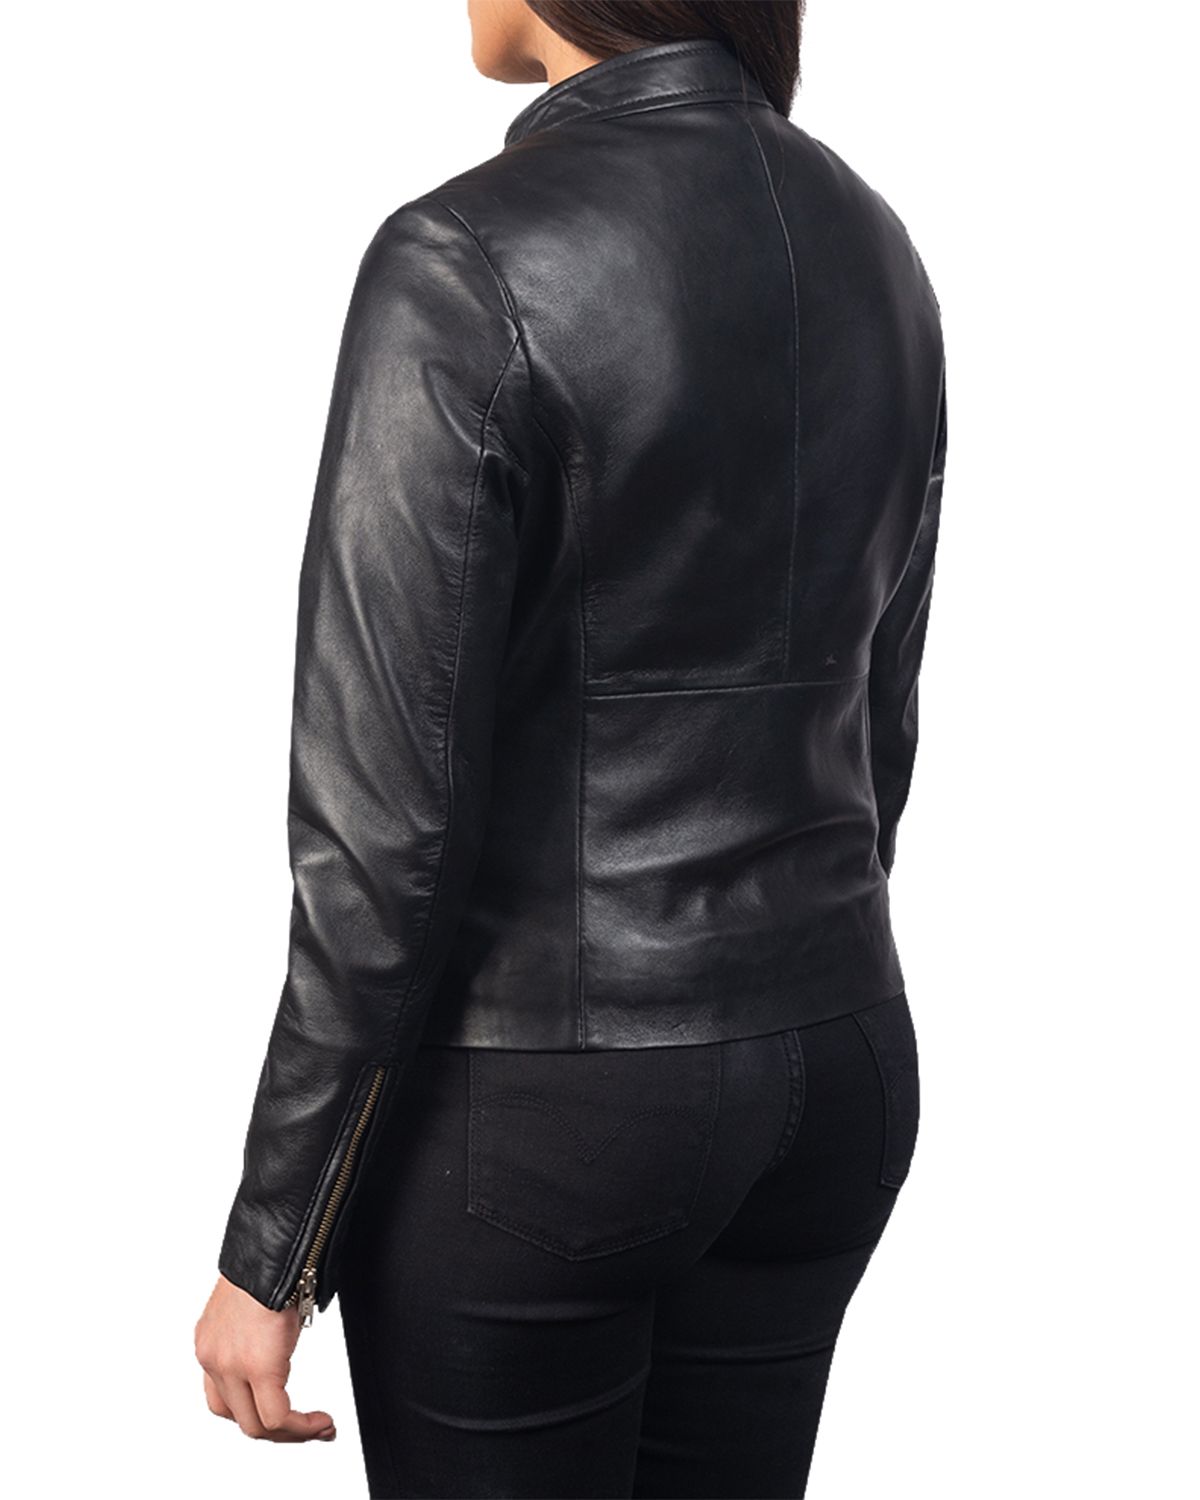 Women's Plain Biker Leather Jacket